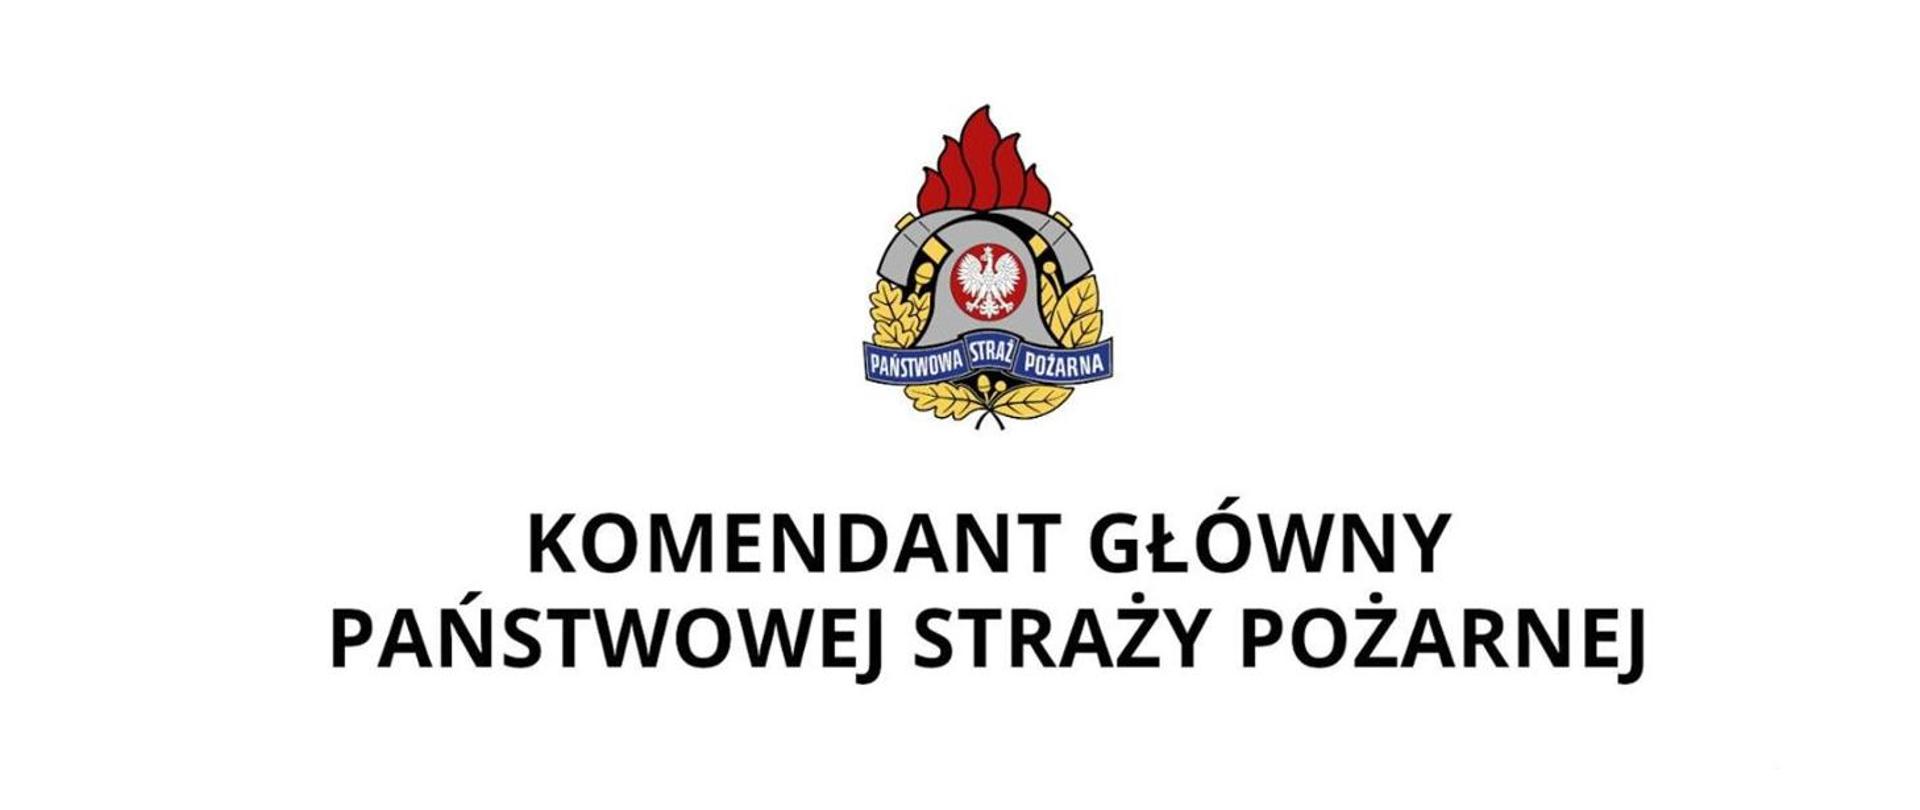 Komendant_Główny_Państwowej_Straży_Pożarnej